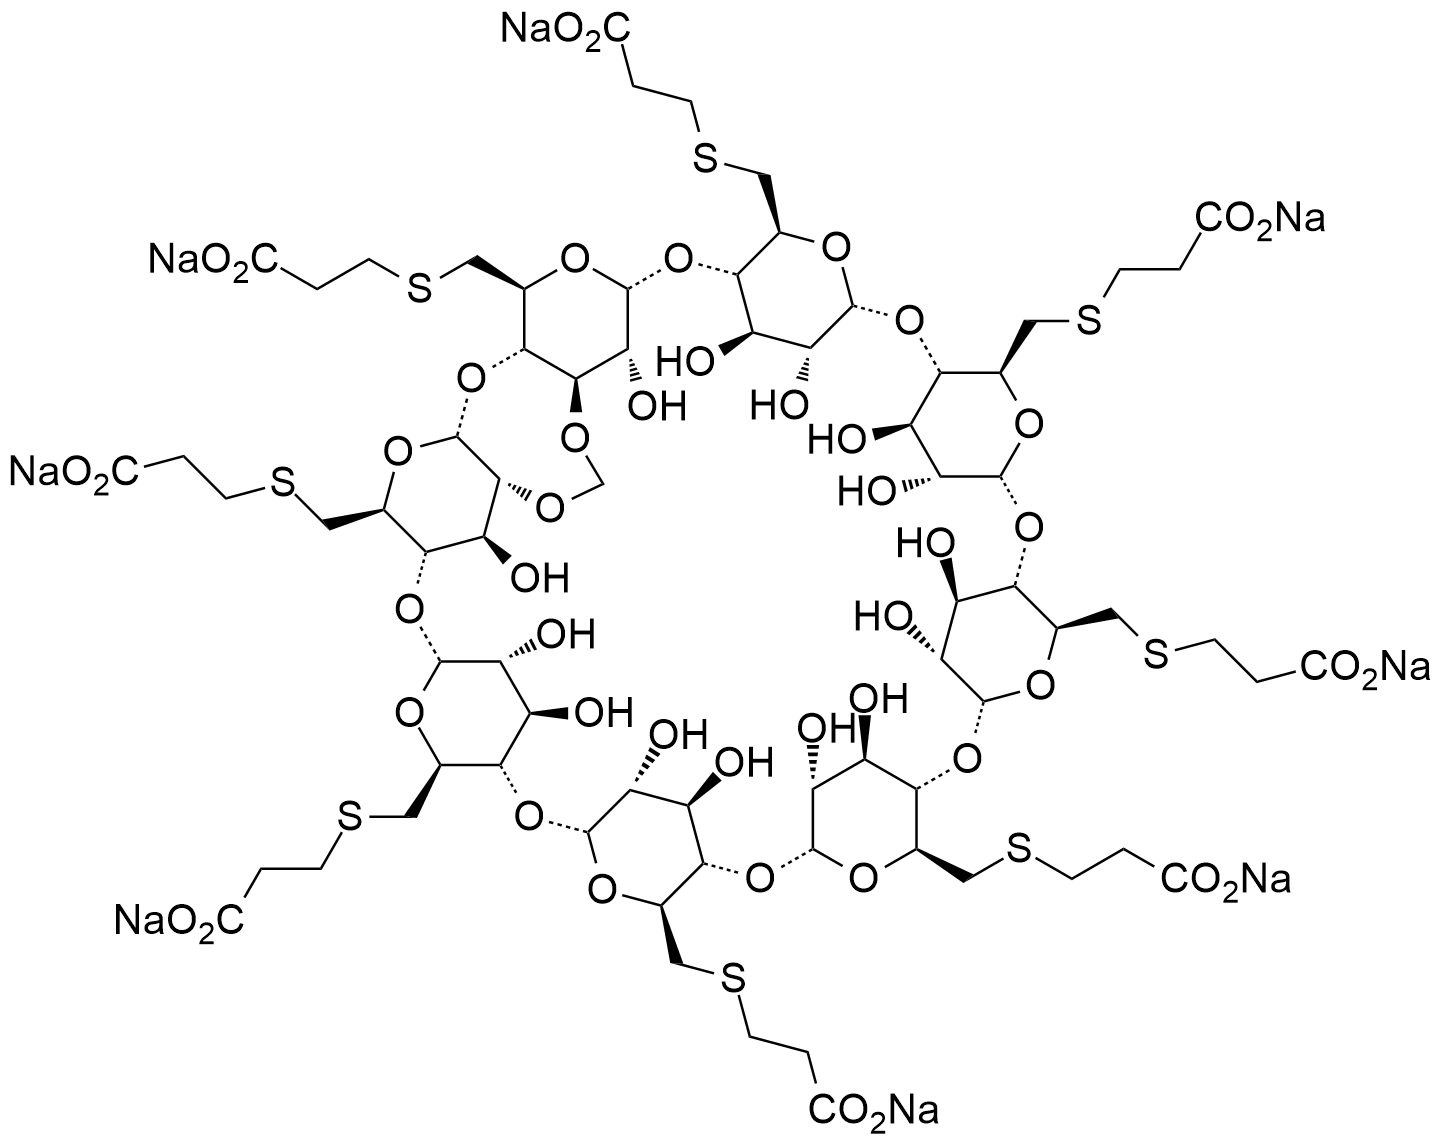 舒更葡糖钠Org199010-1杂质,Sugammadex sodium Org199010-1 Impurity